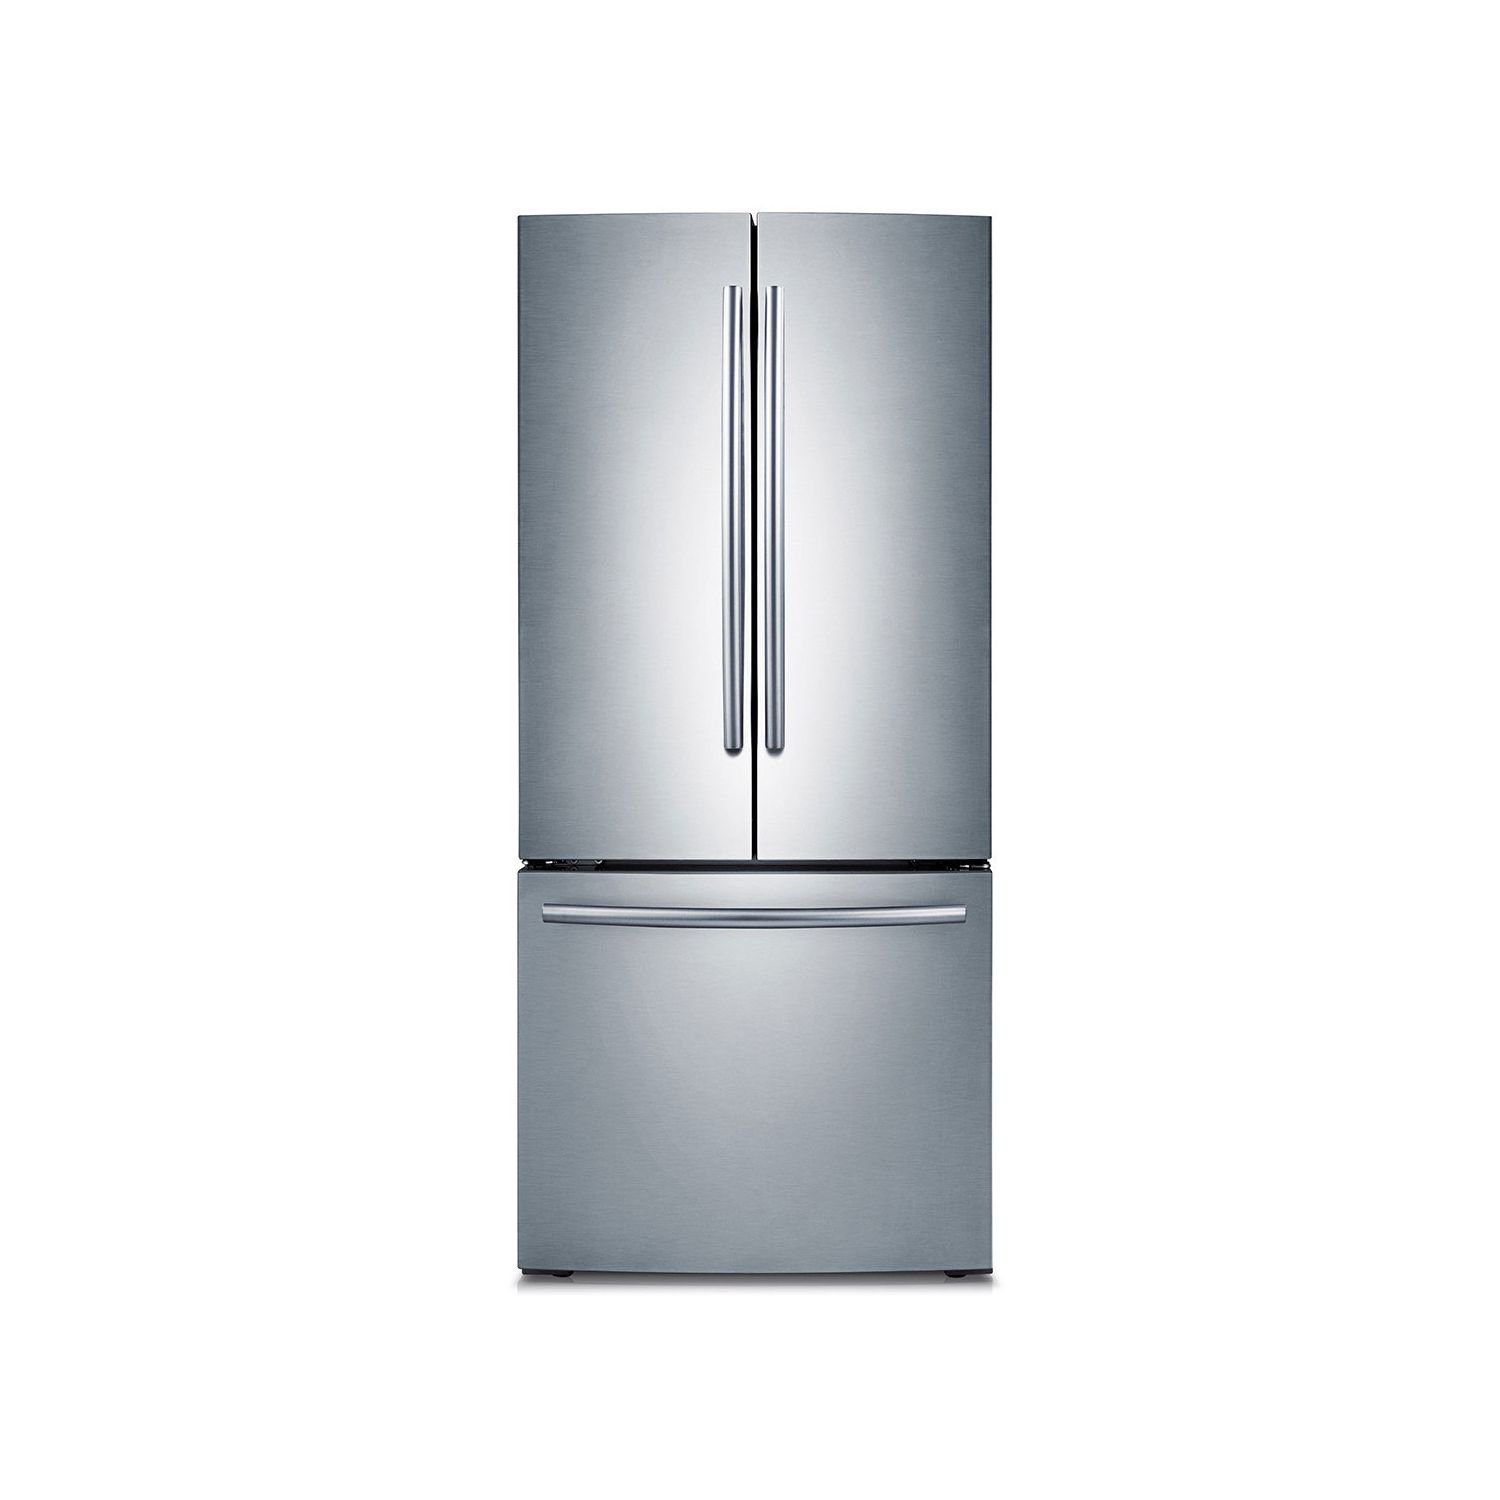 Samsung RF220NCTASR 22 Cu. Ft. 3-Door French Door Refrigerator in Stainless Steel Finish